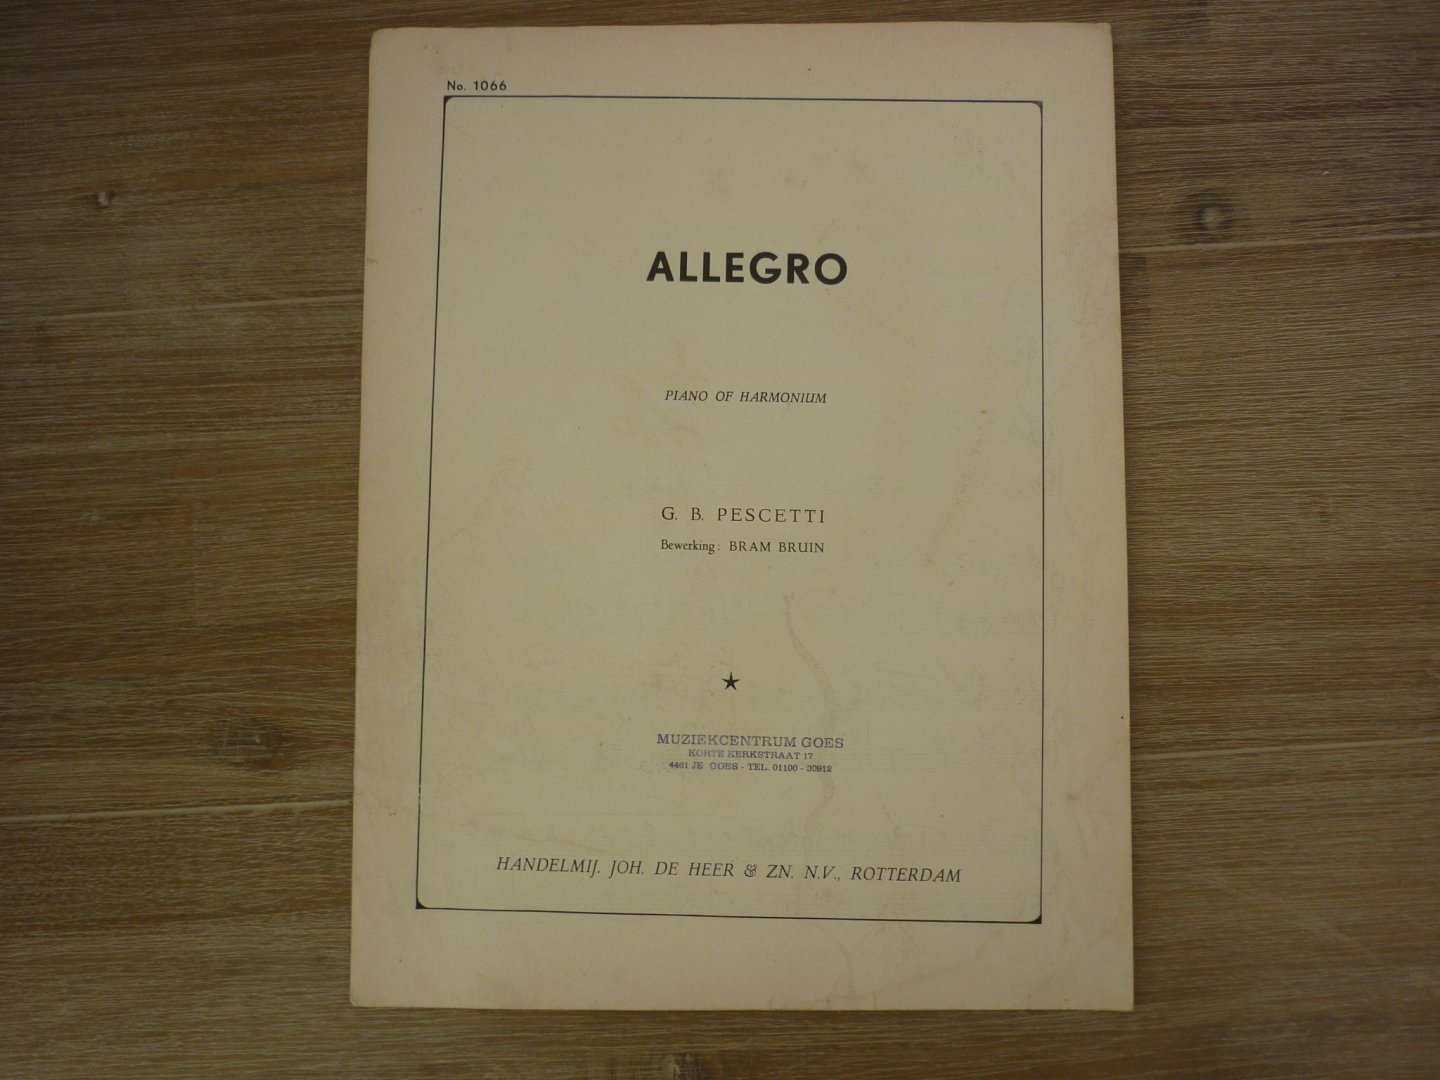 Pescetti; G.B. (1704 - 1766) - Allegro (bewerking Bram Bruin)